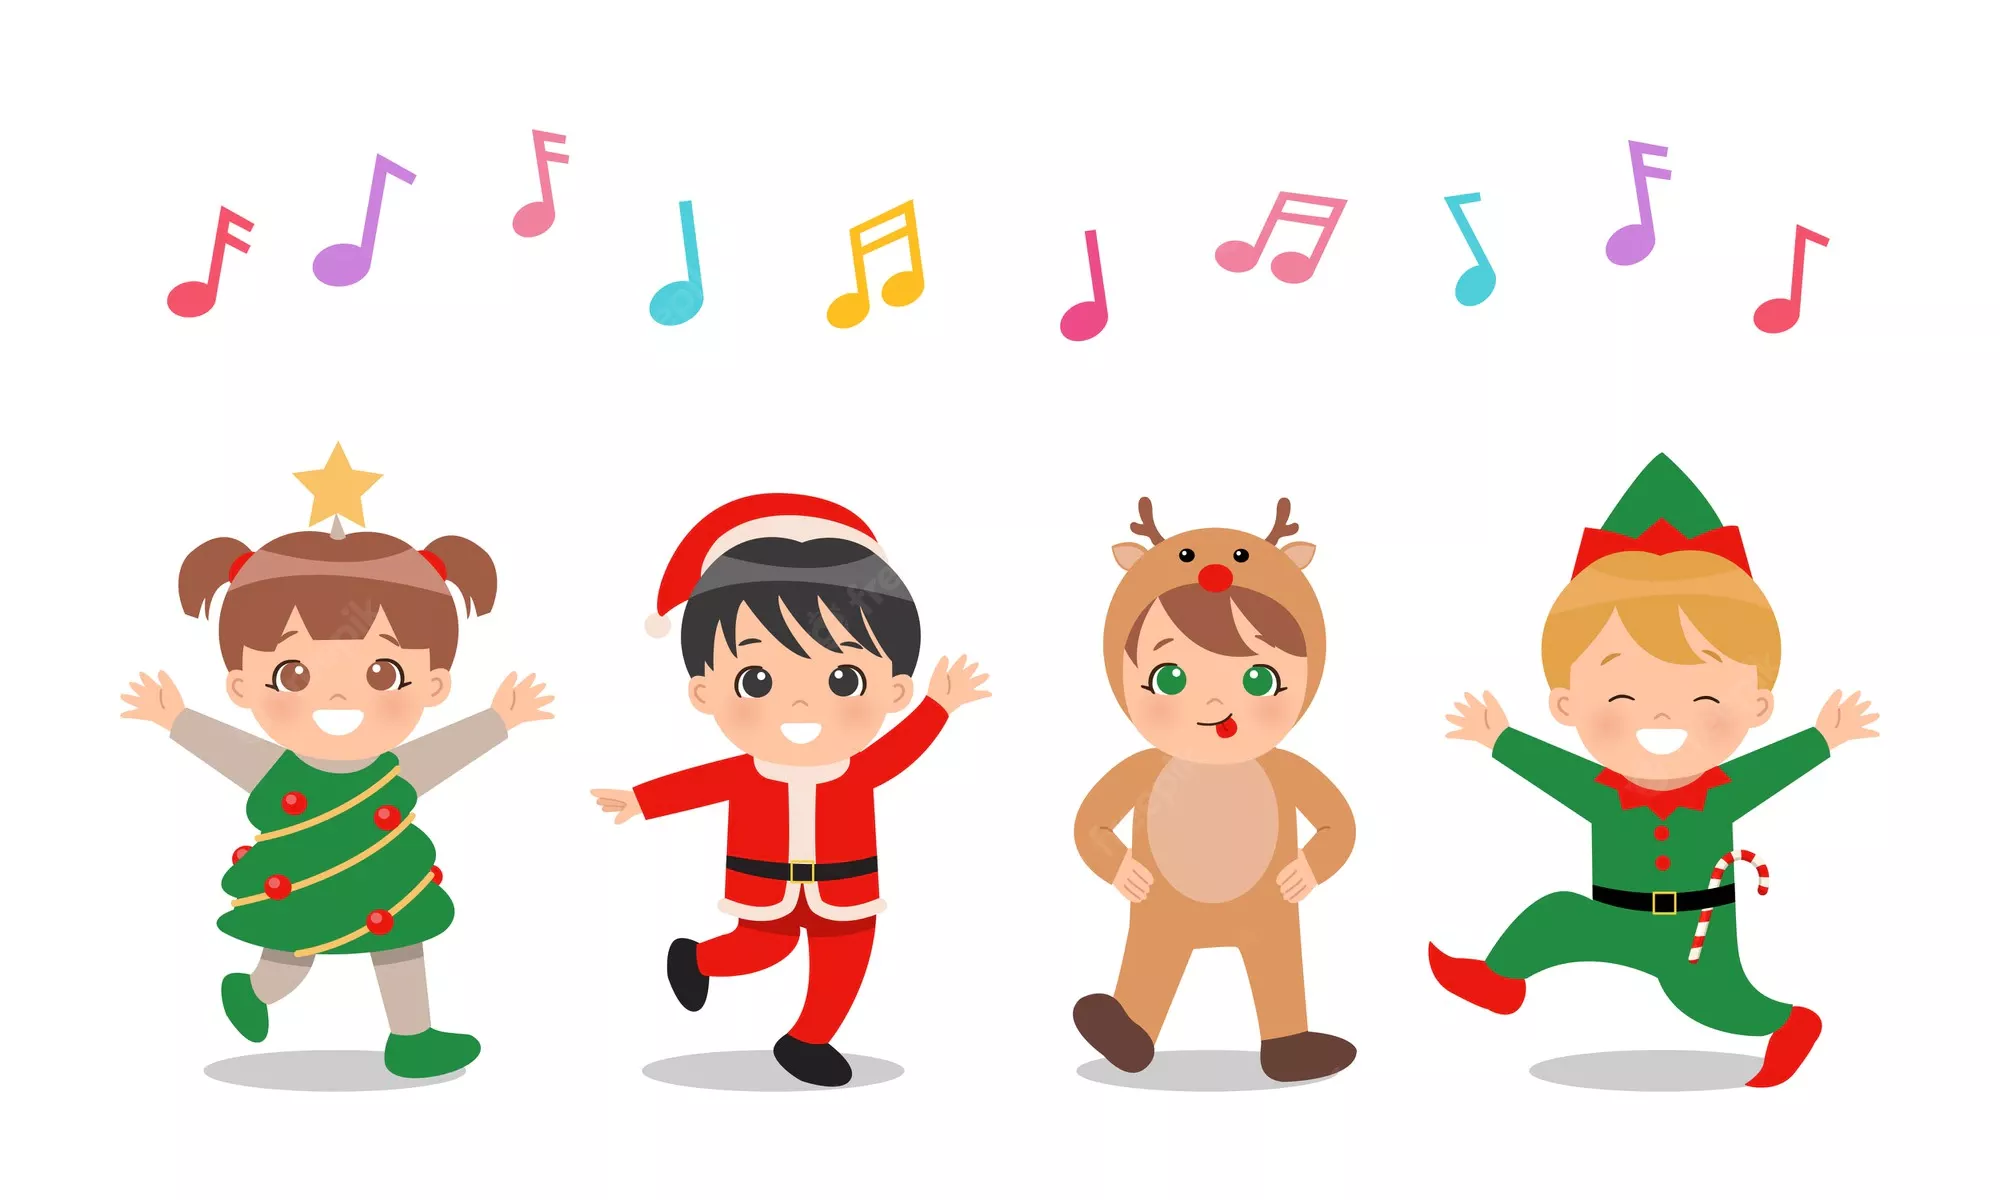 ninos lindos trajes navidad cantando bailando juntos 185694 266